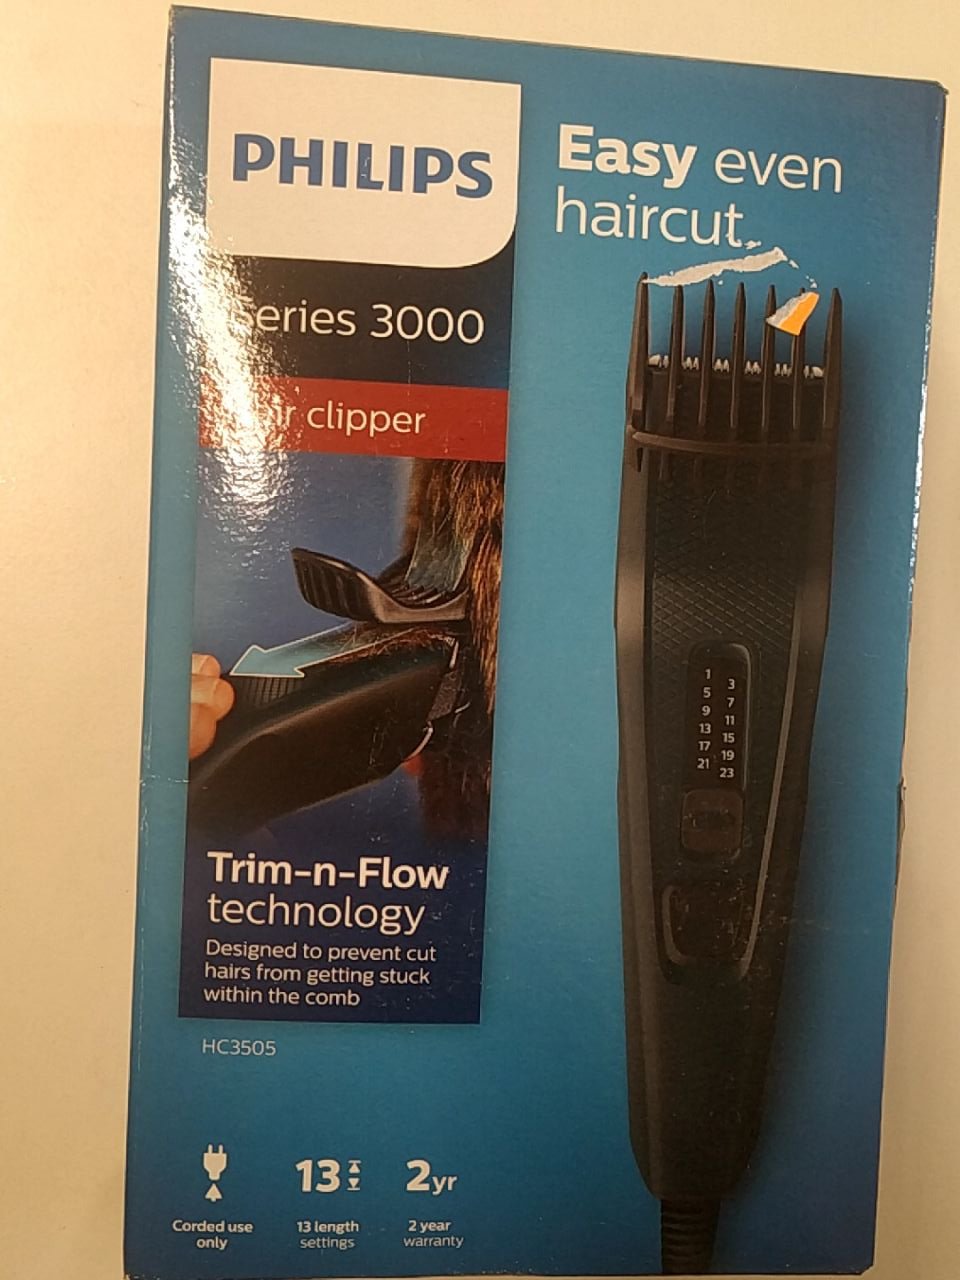 Zastřihovač vlasů Philips HC3522/15 modrý